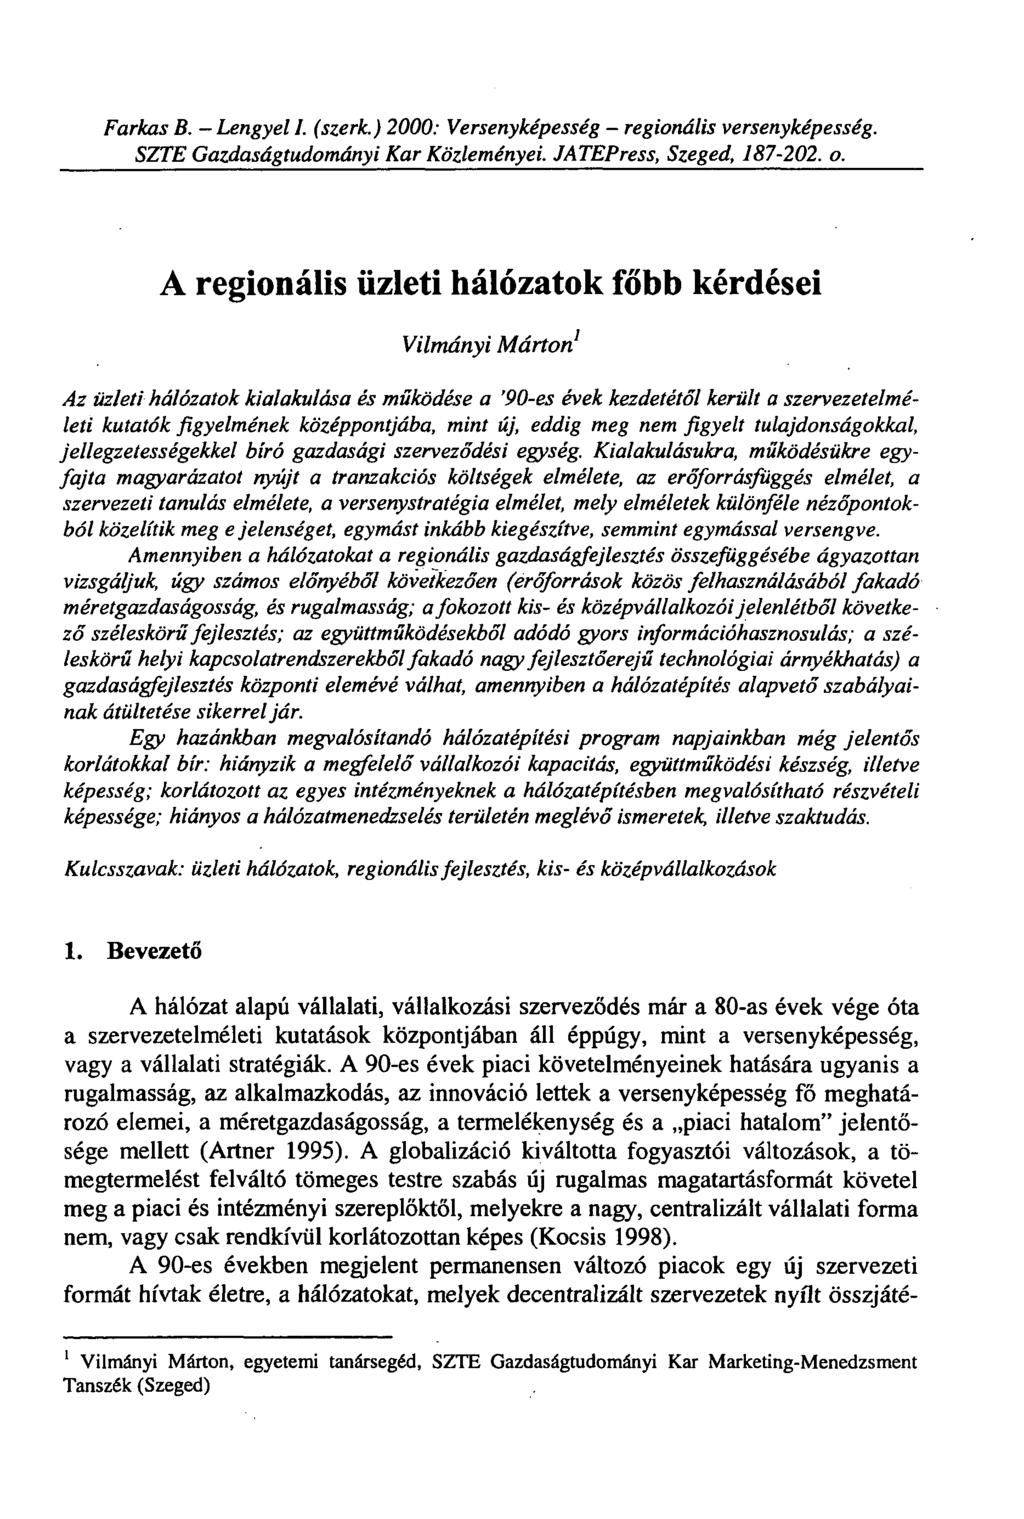 Farkas B. - Lengyel I. (szerk.) 2000: Versenyképesség - regionális versenyképesség. SZTE Gazdaságtudományi Kar Közleményei. JATEPress, Szeged, 187-202. o.